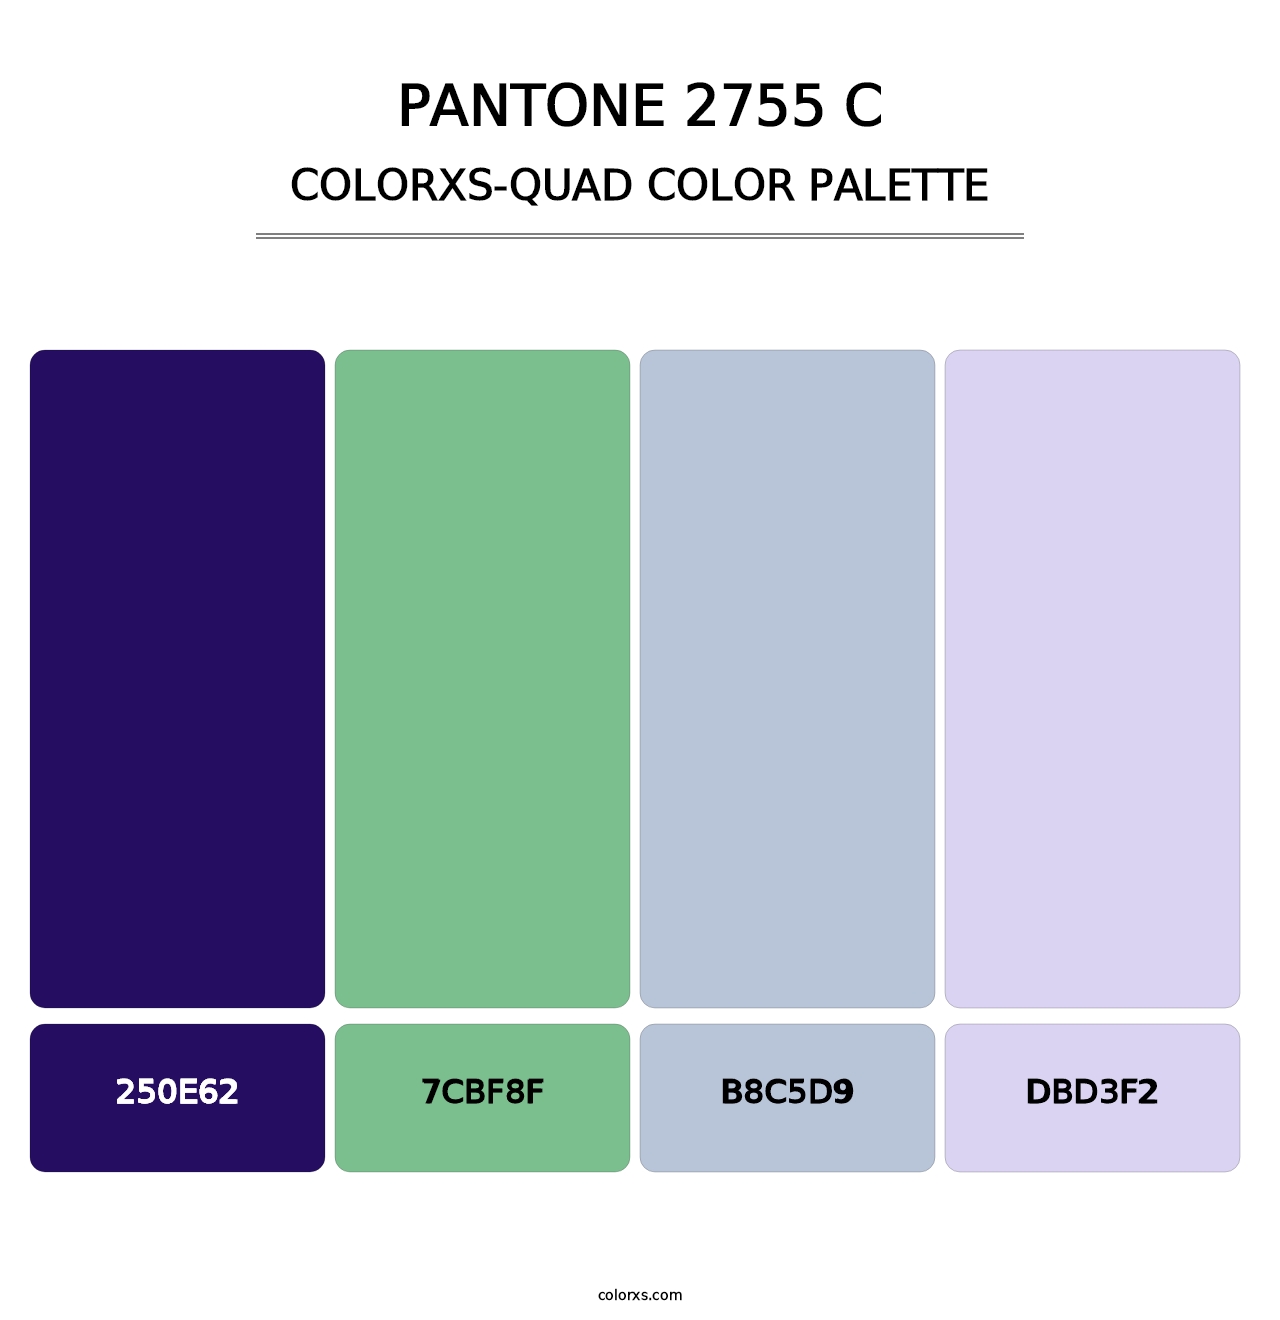 PANTONE 2755 C - Colorxs Quad Palette